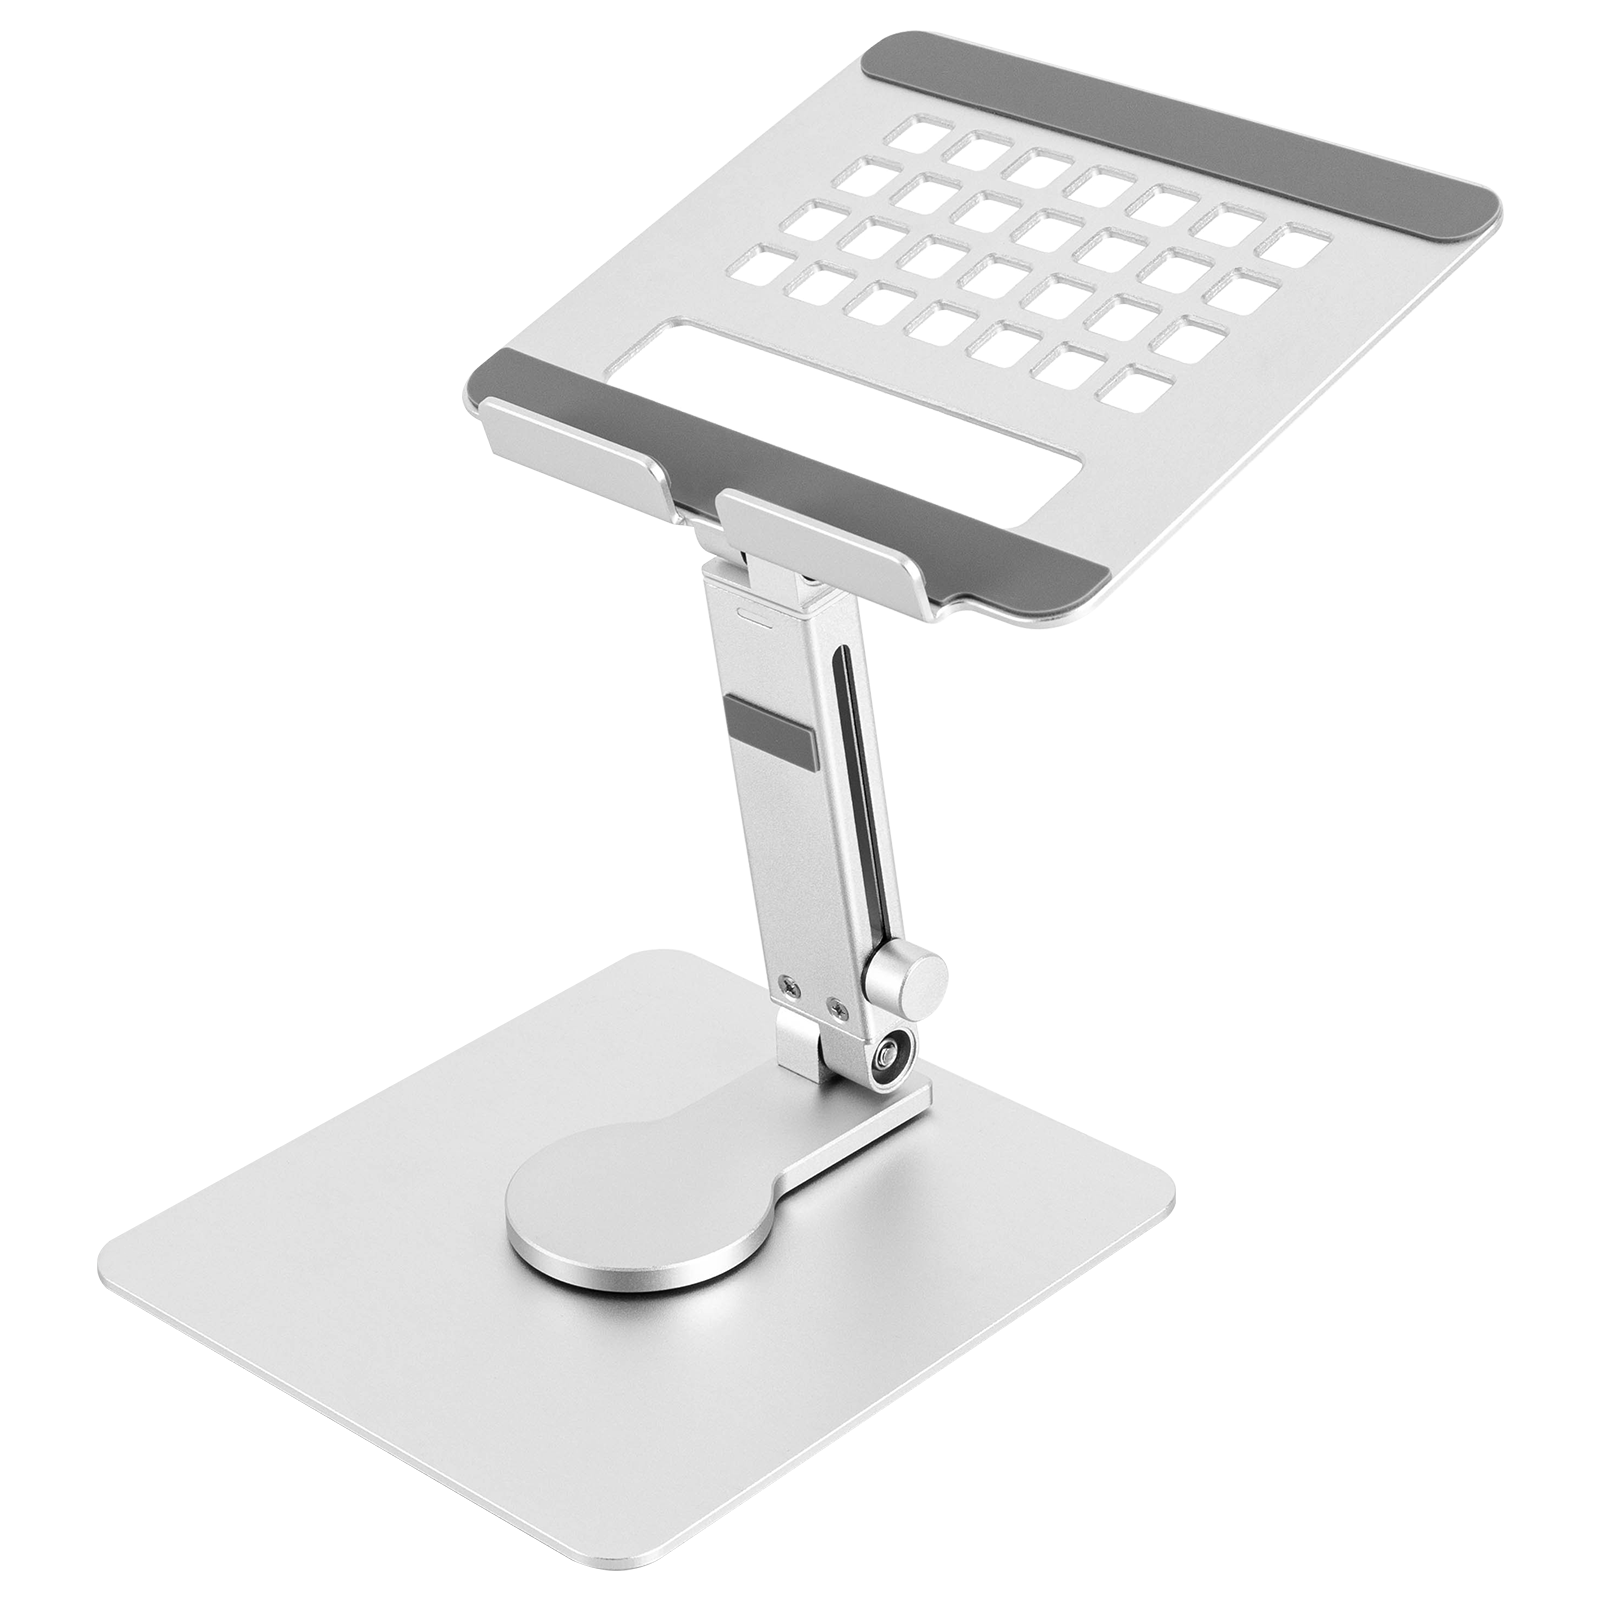 Tablet-Ständer mit 360 drehbarem Fuß, höhenverstellbarer Aluminium-Tablet-Halter für den Schreibtisch